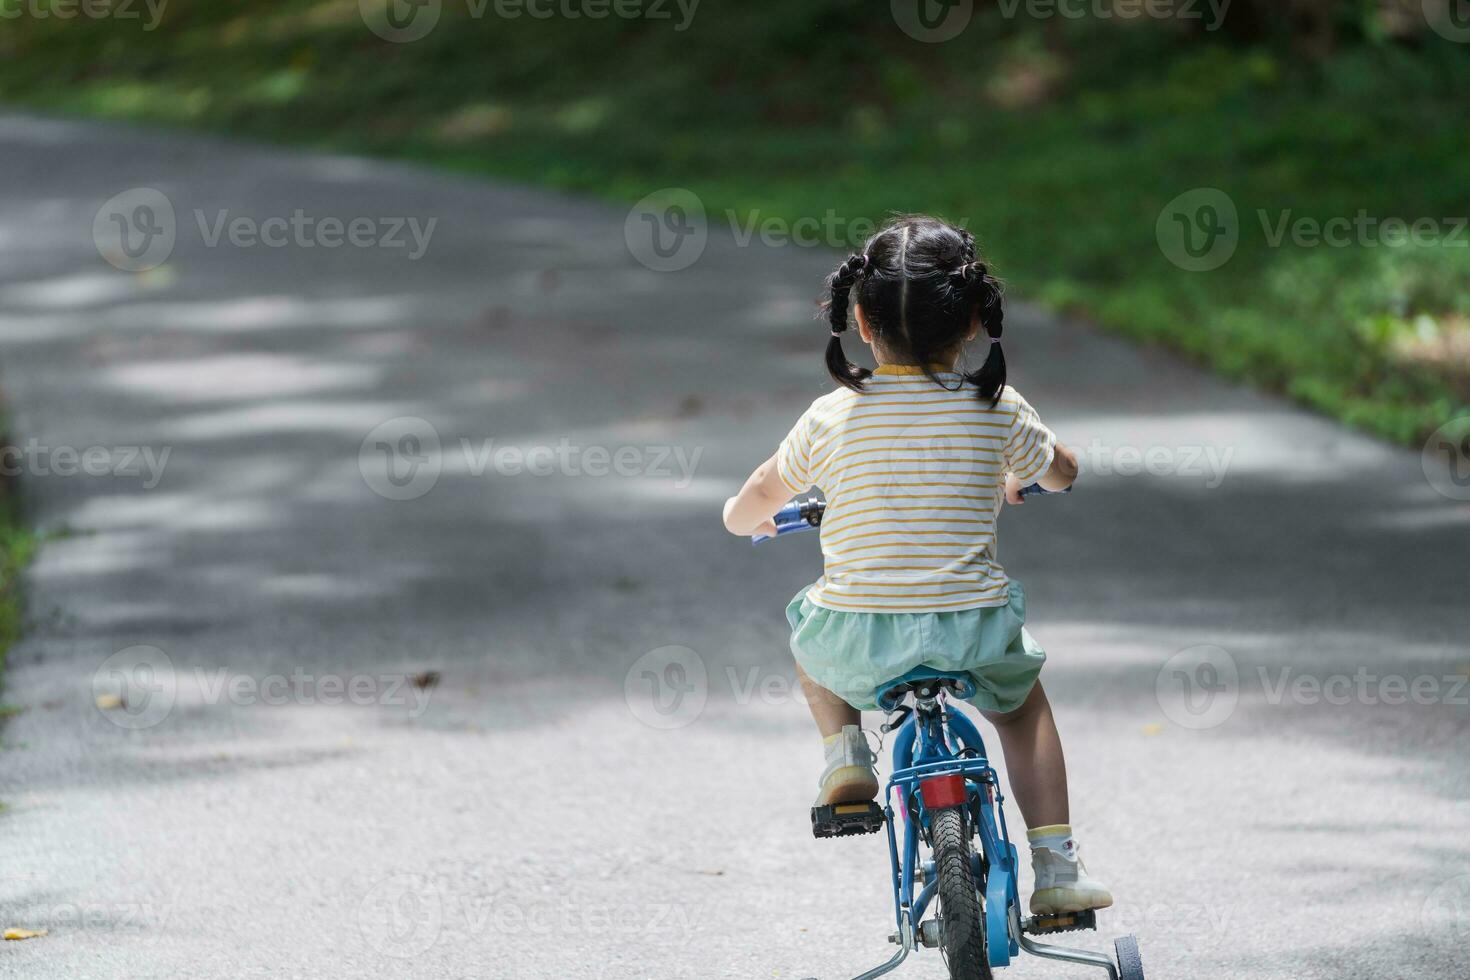 vista lateral traseira da criança asiática bebê aprendendo a andar de bicicleta no jardim do parque. conceito de educação para crianças praticam ciclismo no parque, conceito de esporte para bebês. foto